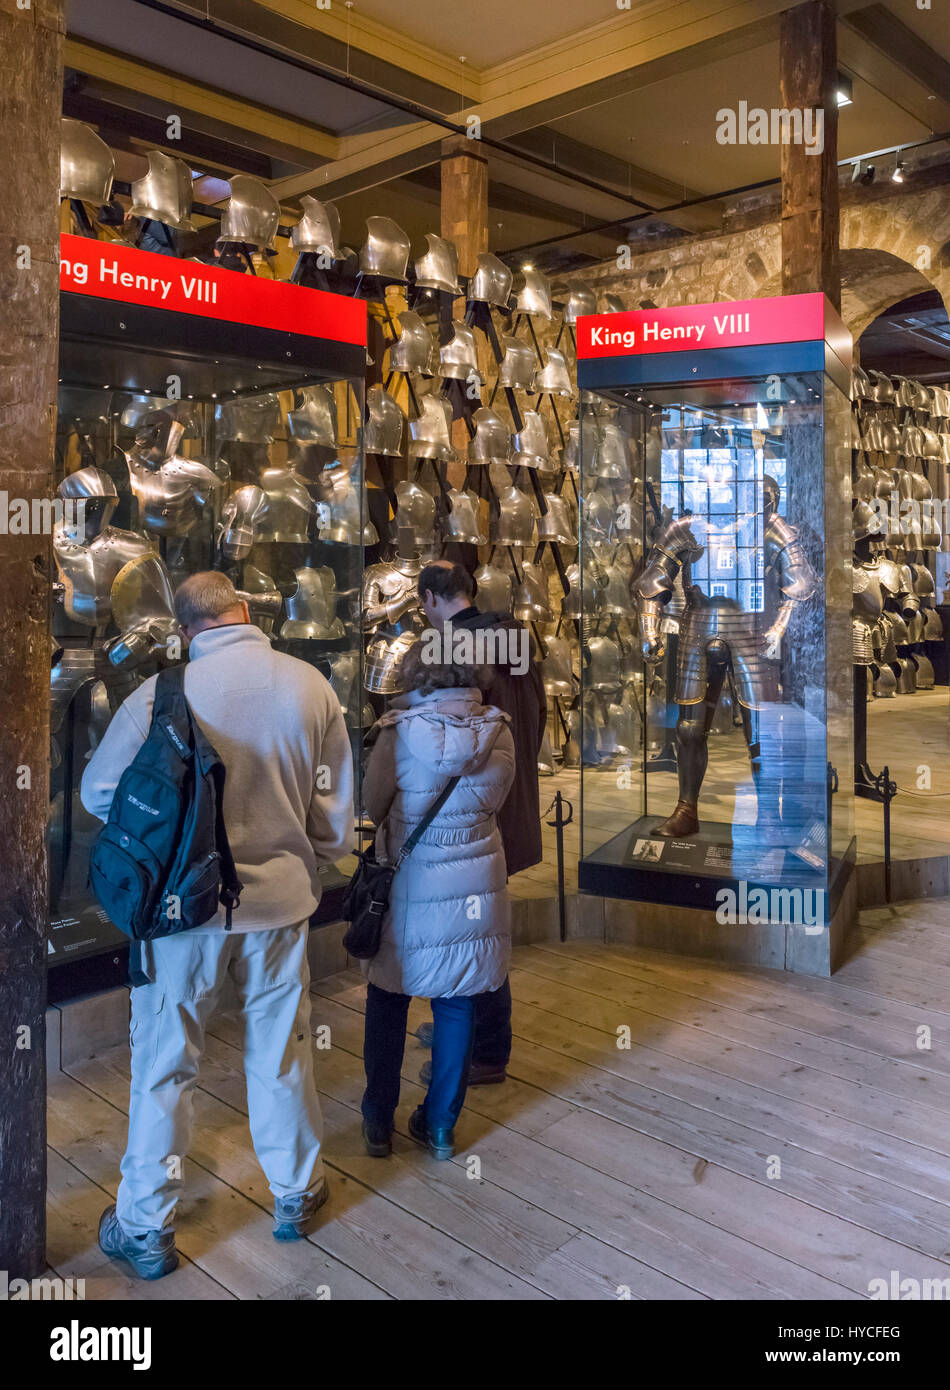 Tower of London. Besucher betrachten ein Display Rüstung in der Royal Armouries Sammlung, unter anderem getragen von König Henry VIII, White Tower, Tower of London, London, England, UK Stockfoto